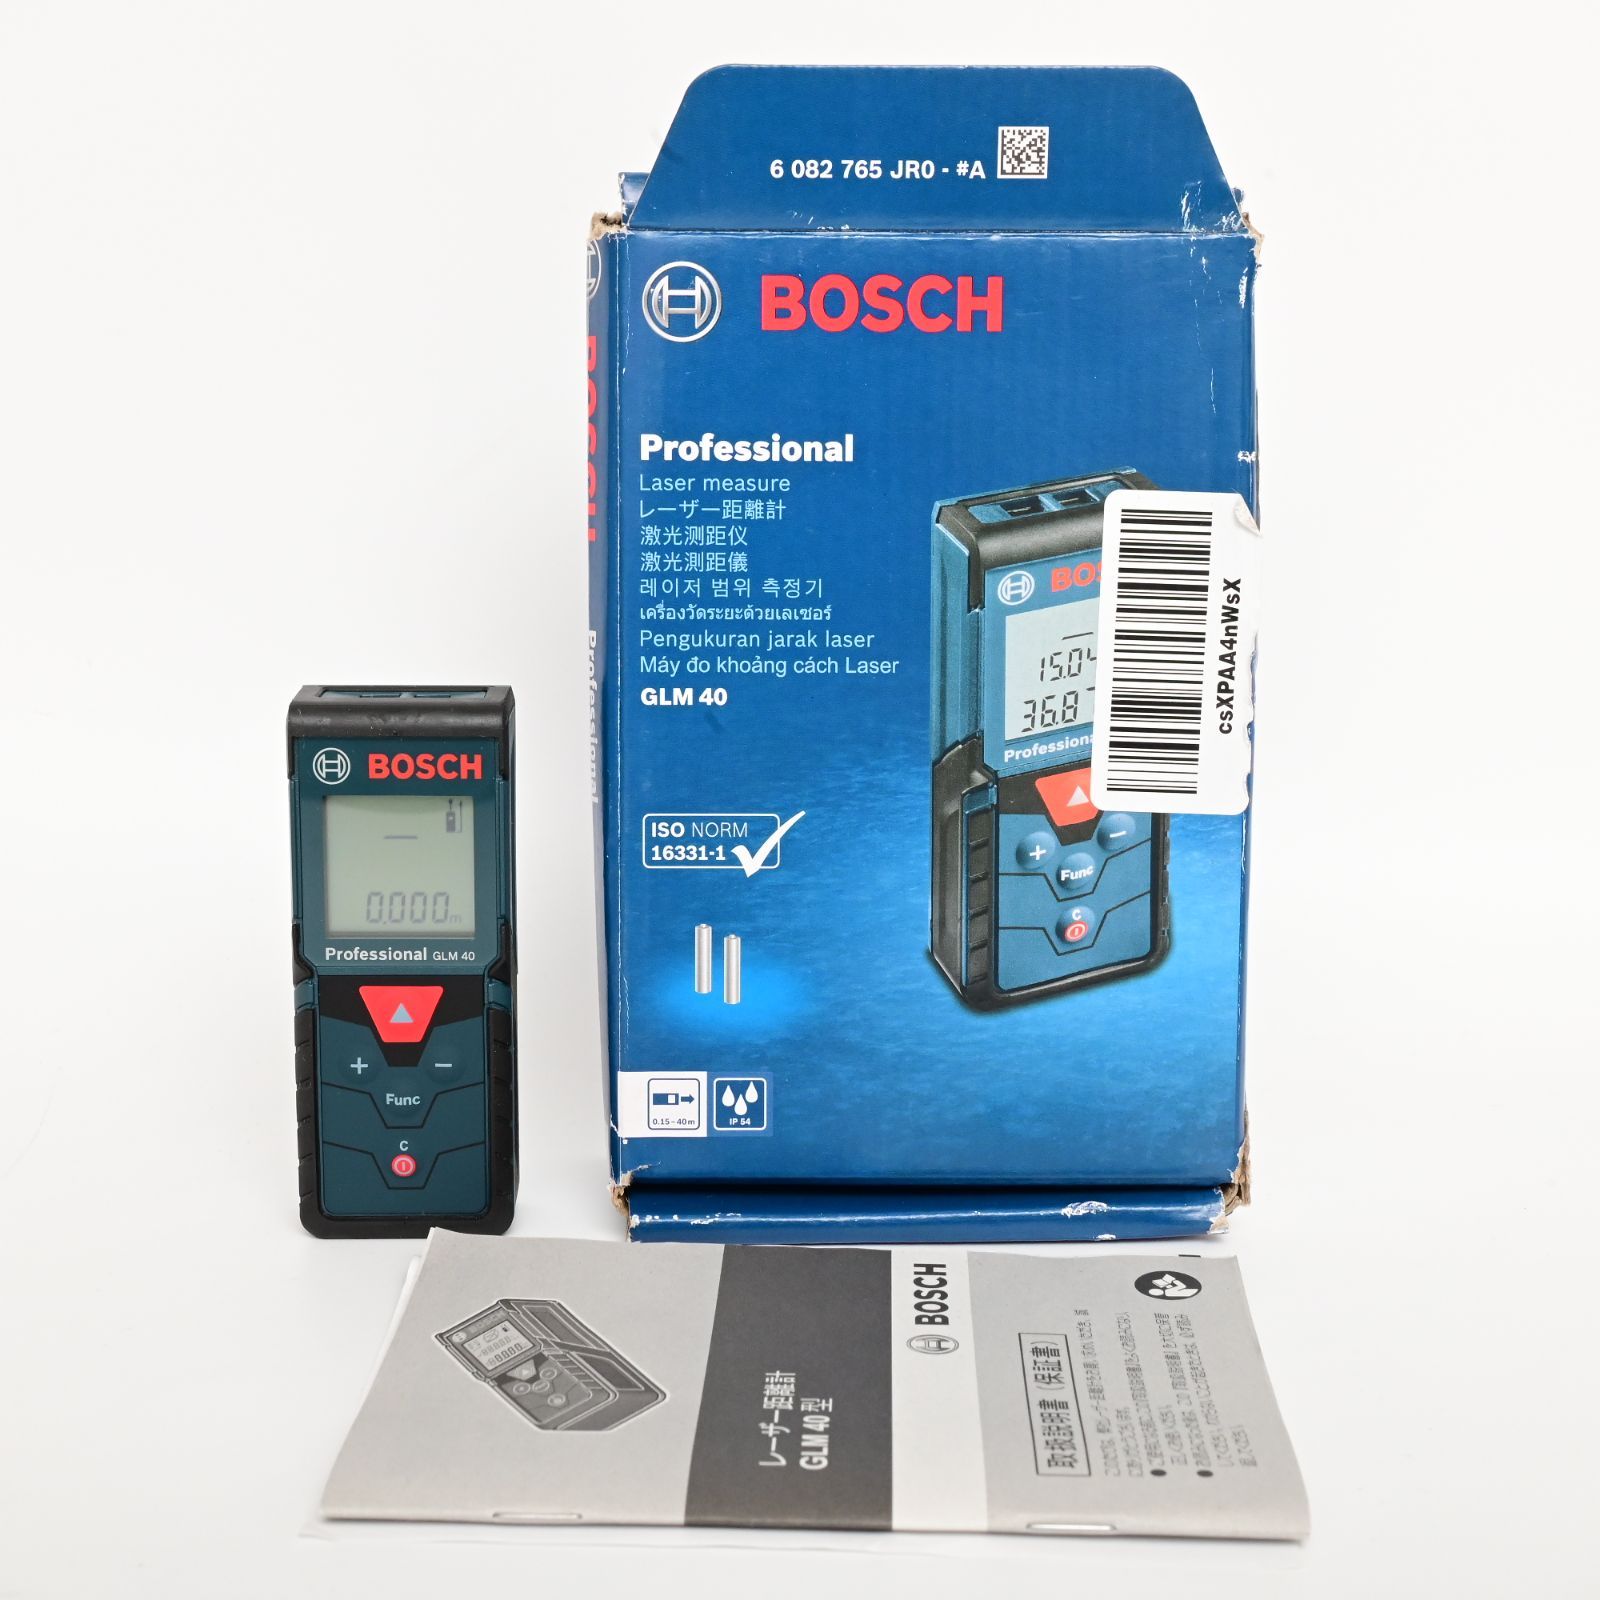 レーザー距離計 GLM40 Professional(ボッシュ) 【正規品】 Bosch